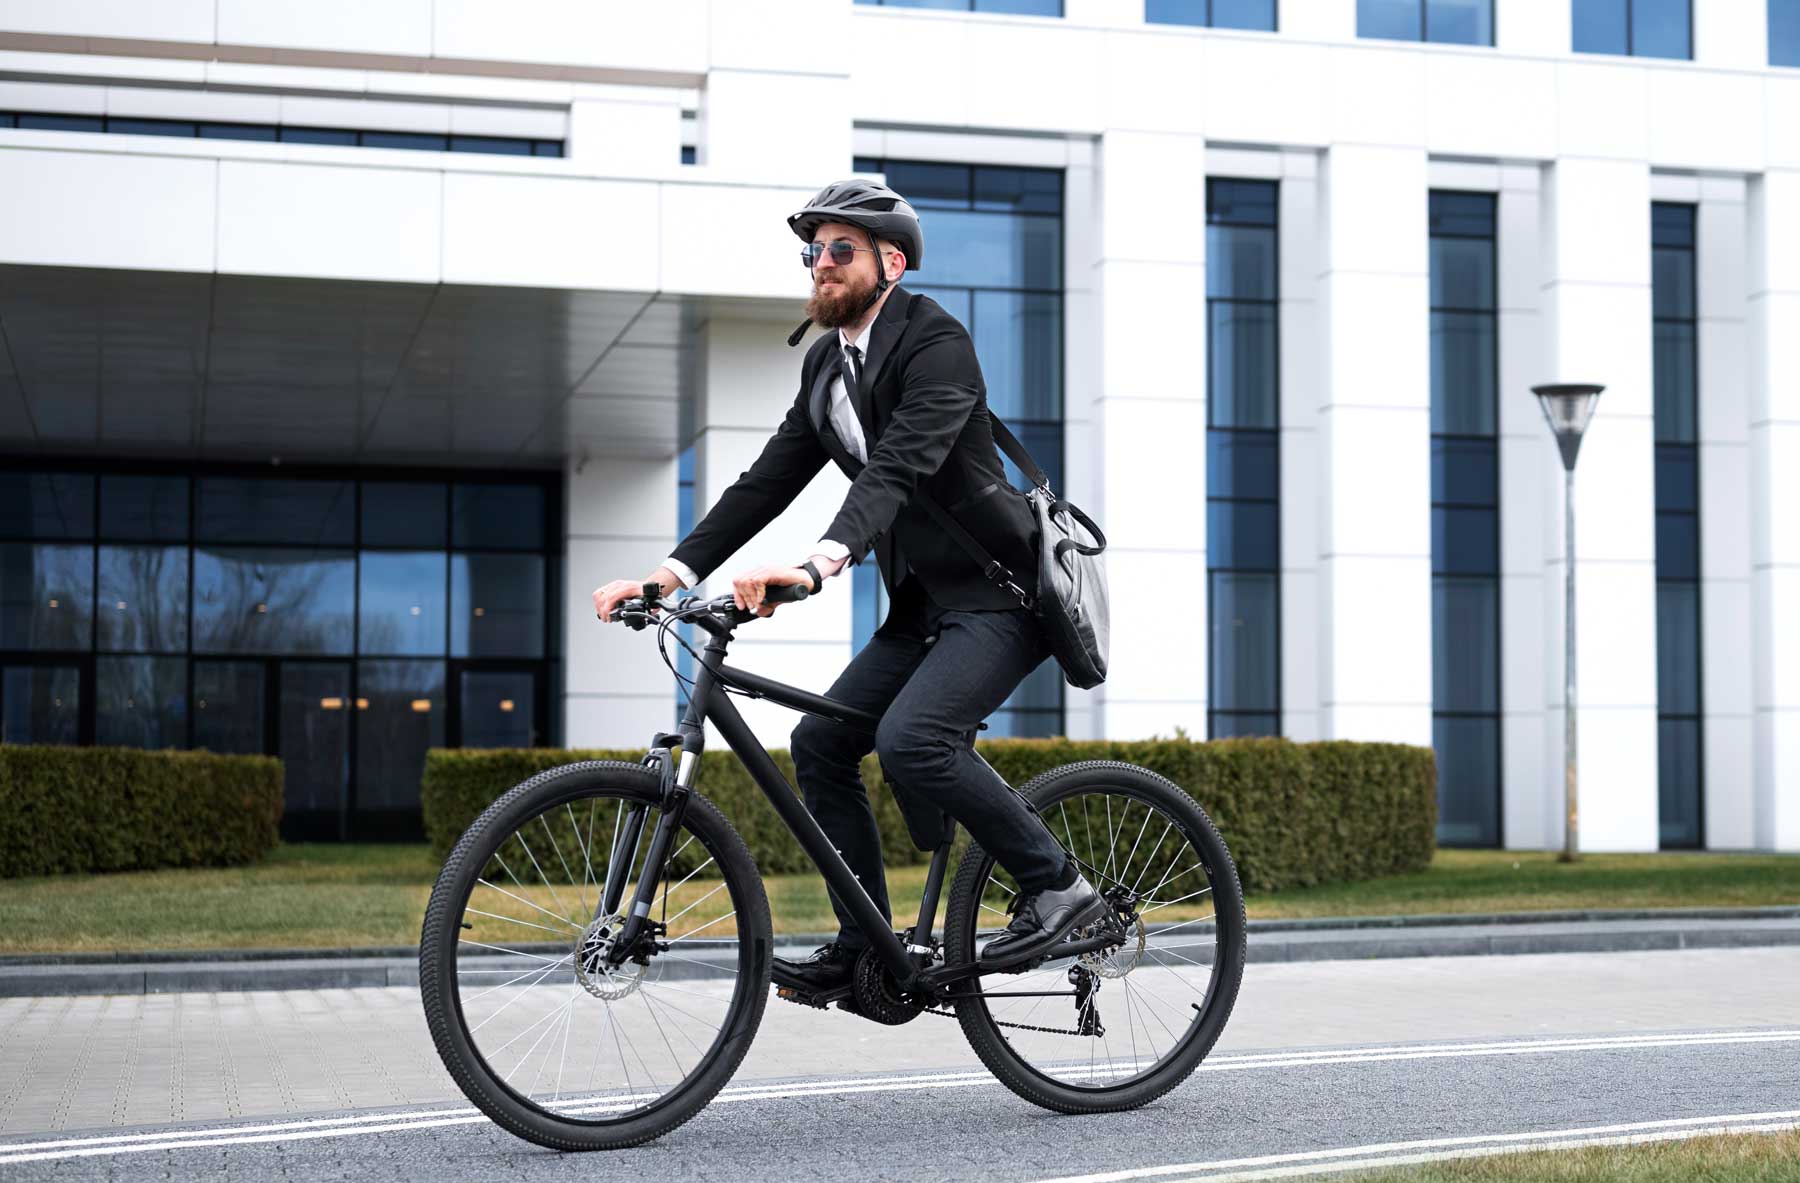 Vélo de fonction : quels avantages pour le salarié et l’entreprise ?